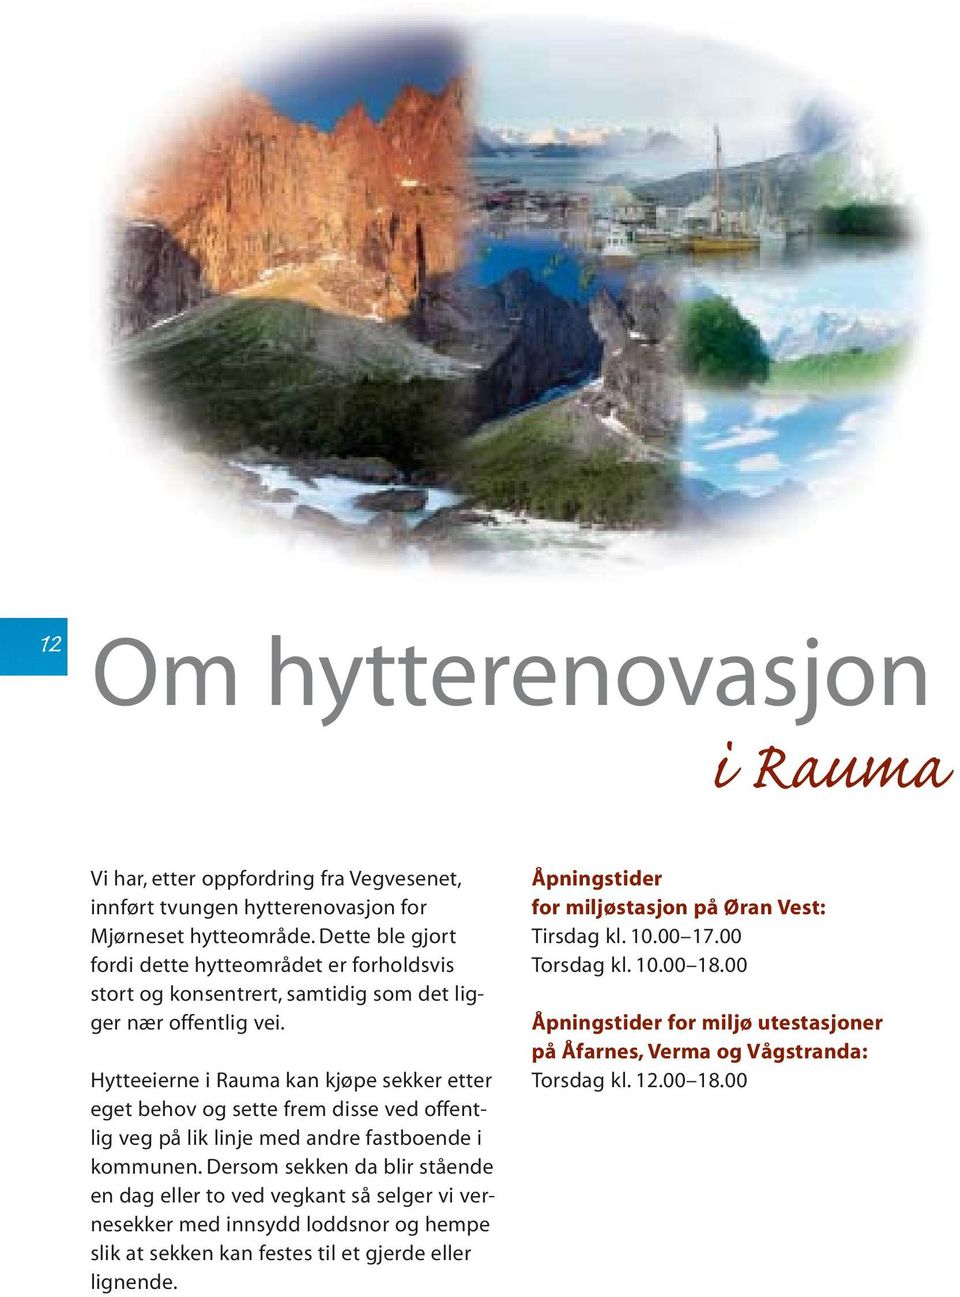 Hytteeierne i Rauma kan kjøpe sekker etter eget behov og sette frem disse ved offentlig veg på lik linje med andre fastboende i kommunen.